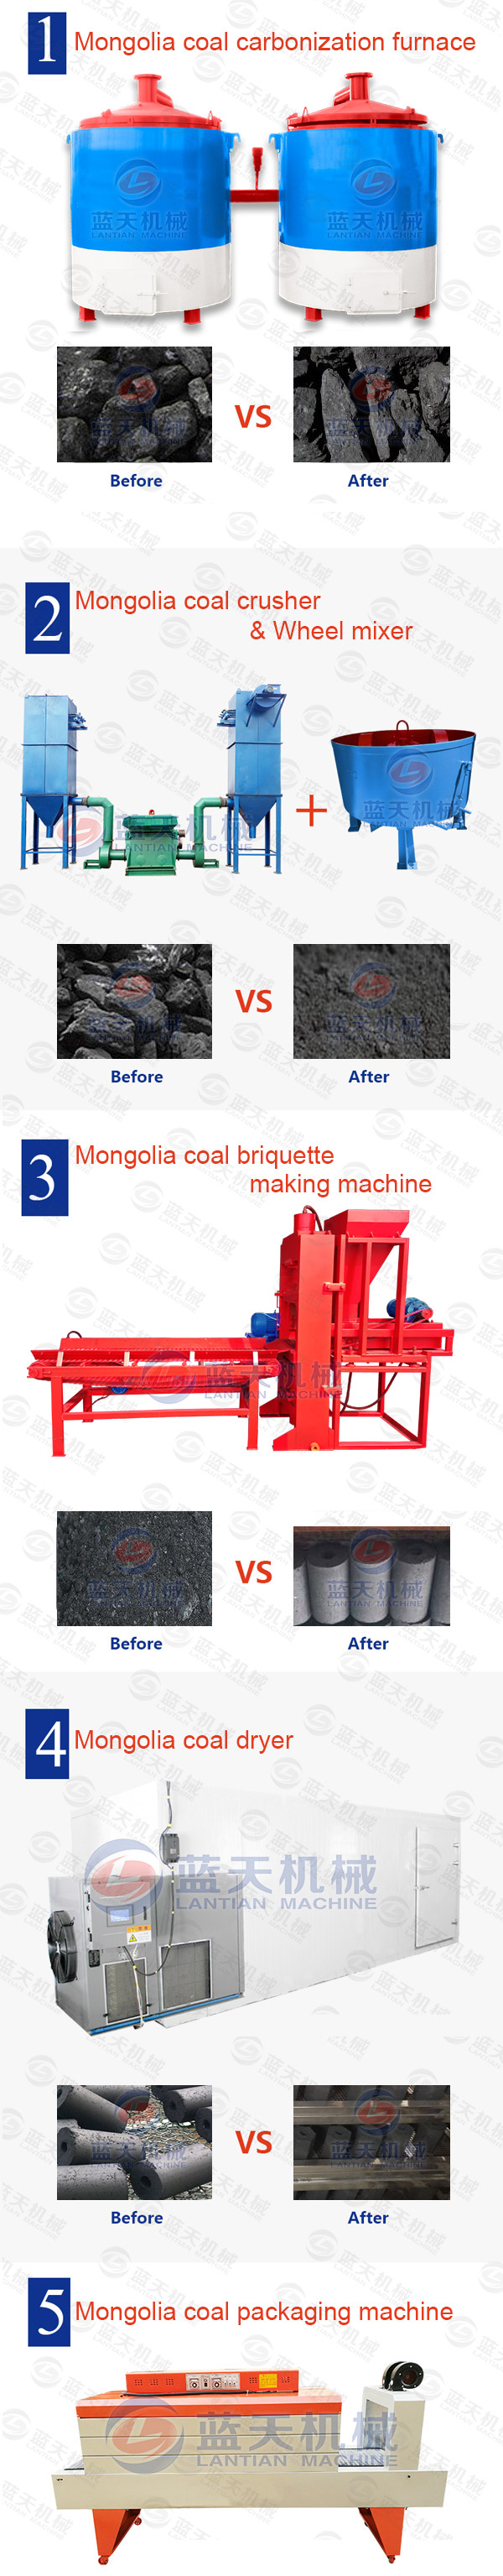 Mongolia Coal Briquette Making Machine Production Line